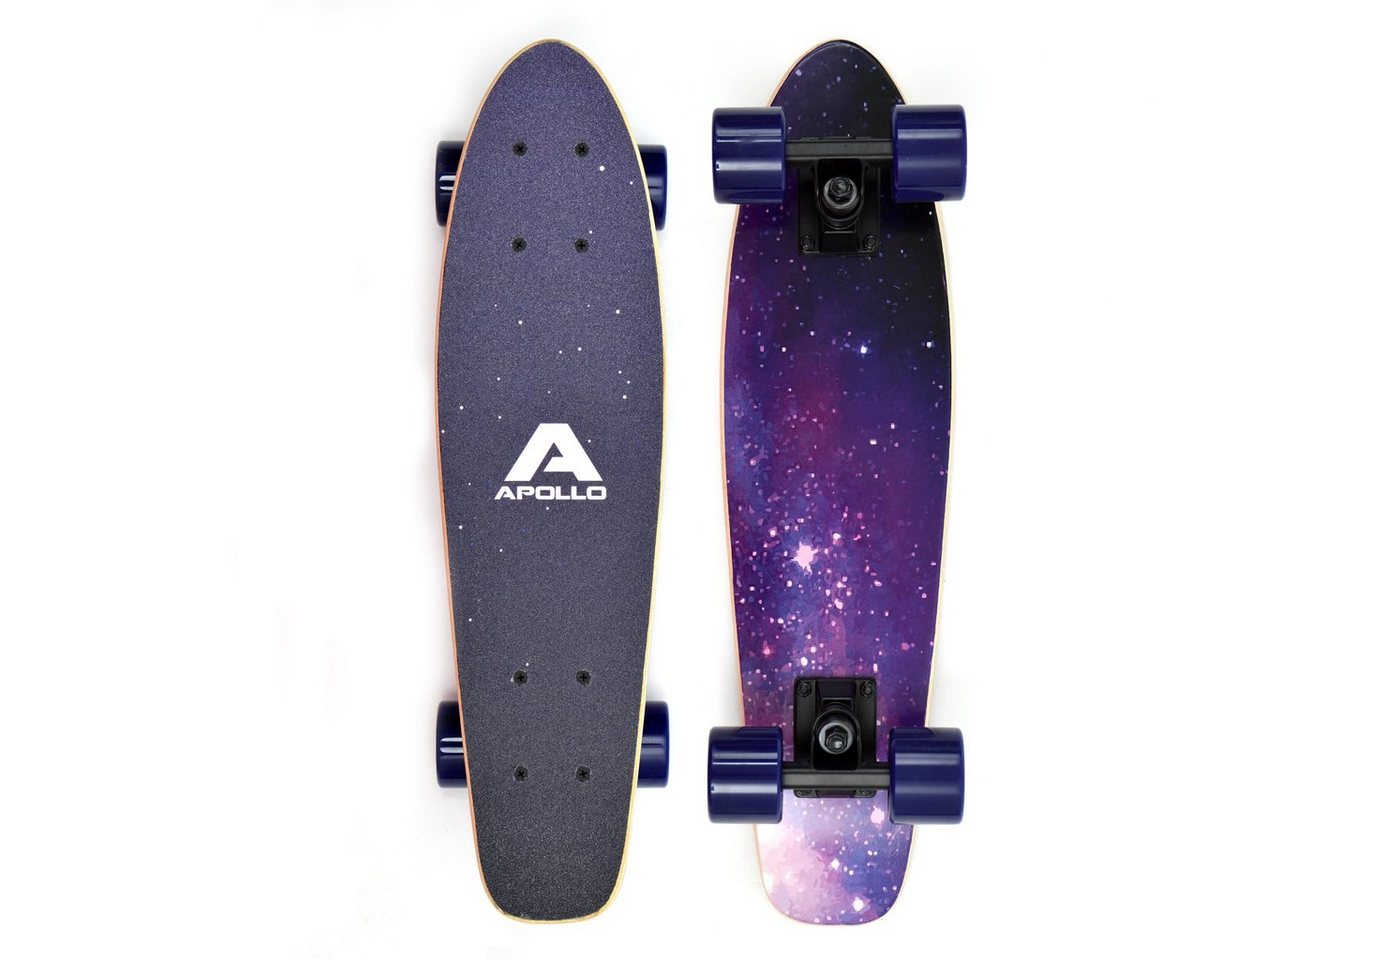 Apollo Miniskateboard Fancyboard Classic Blue 22, kompakt mit hochwertiger Verarbeitung" von Apollo